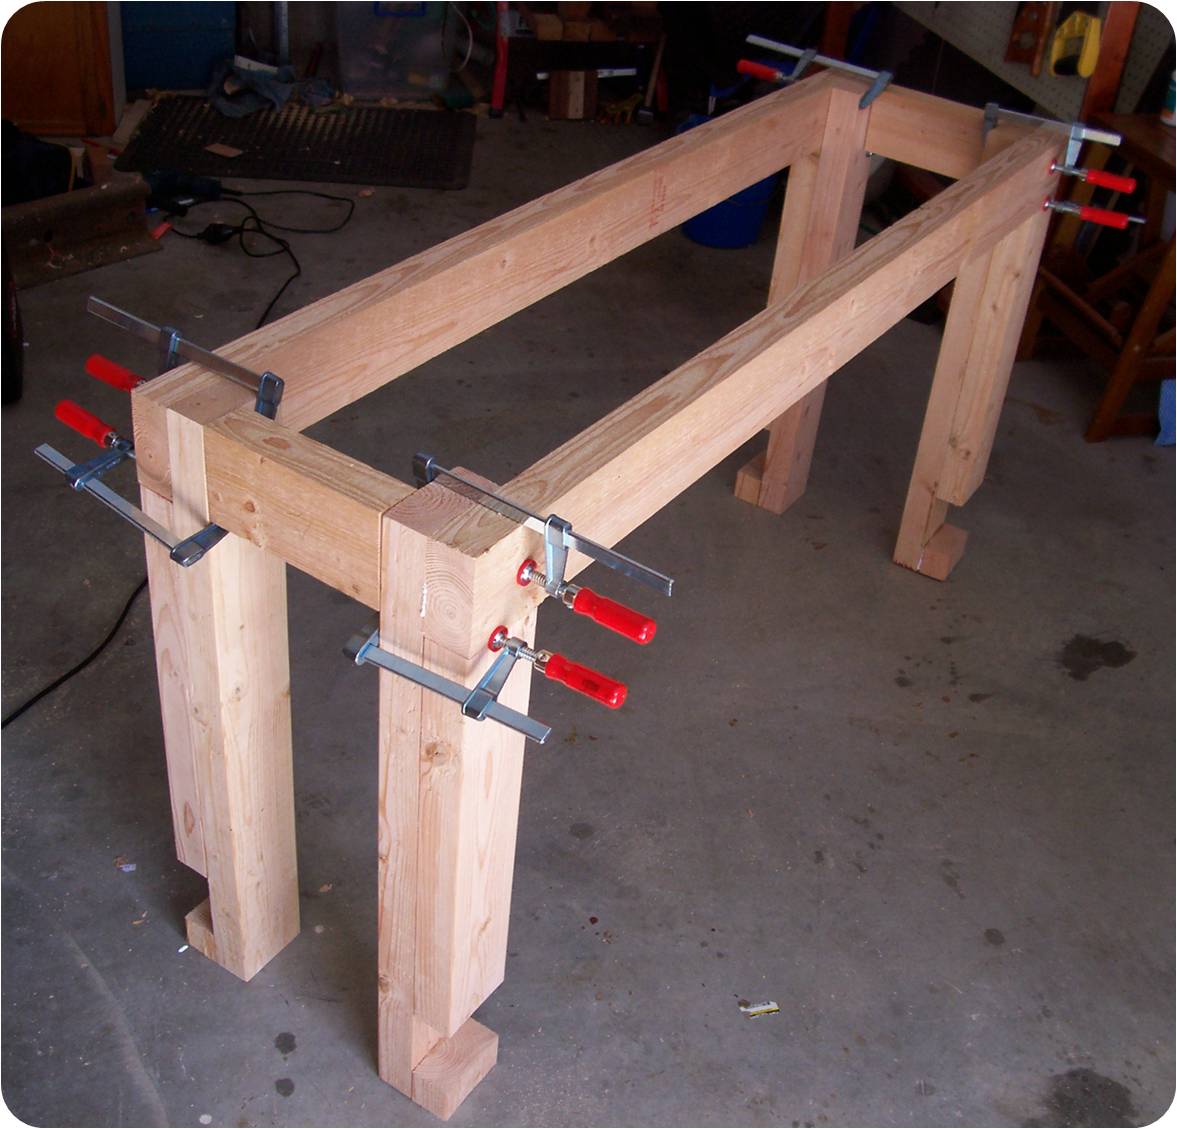 Building a workbench | The Woodwork Geek